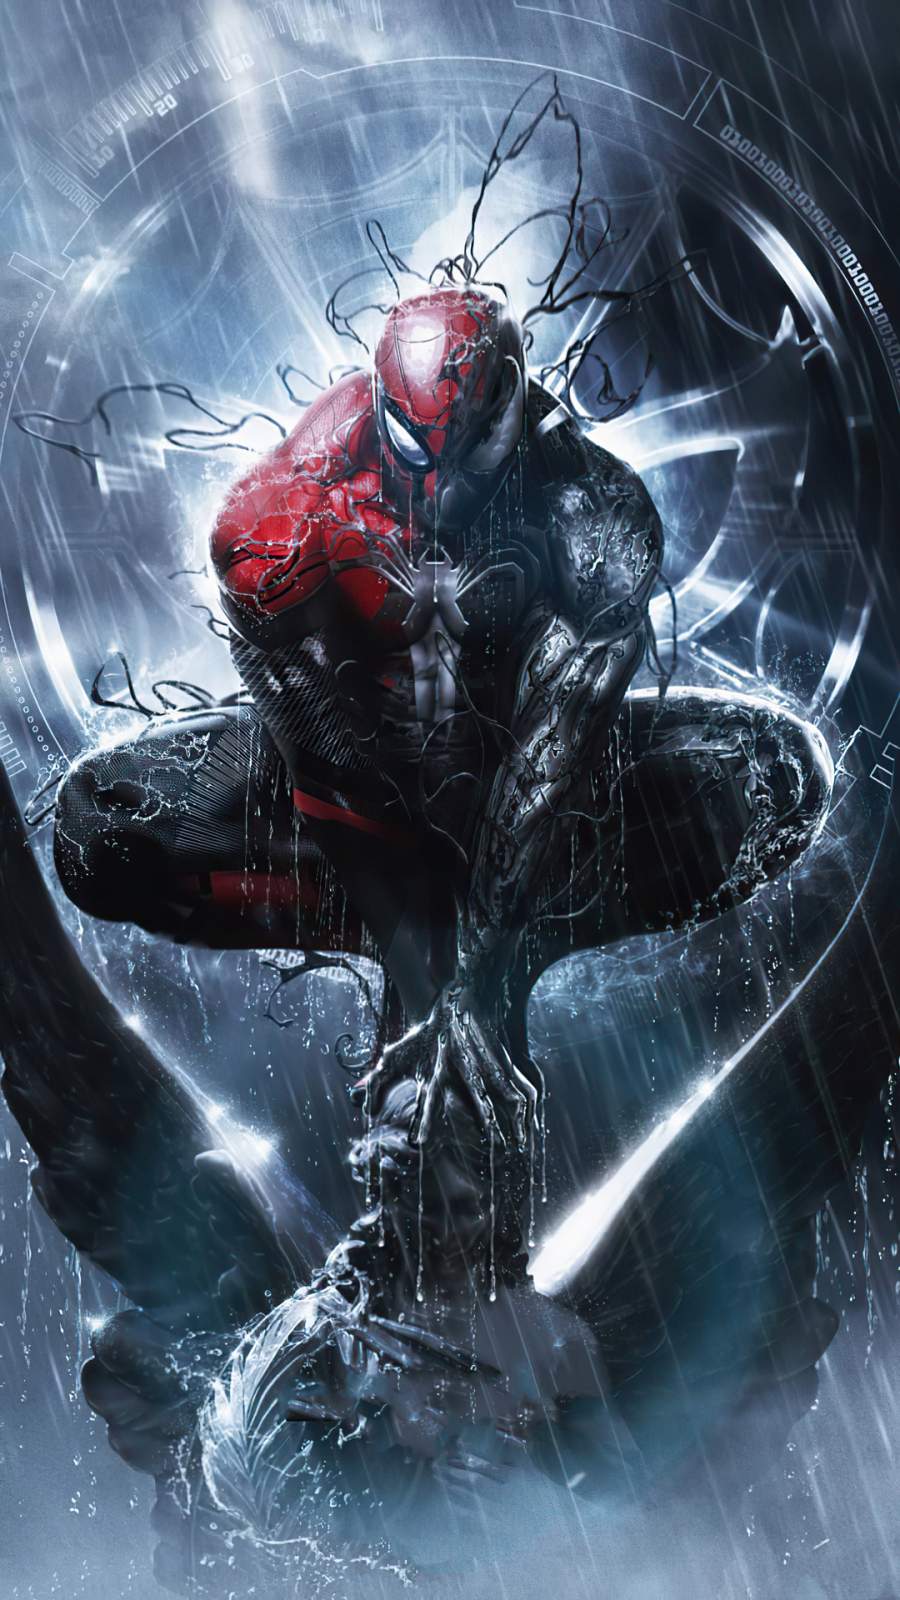 Symbiote Spiderman: Siêu anh hùng người nhện đã trở thành biểu tượng của nhiều thế hệ fan hâm mộ. Quá trình trở thành Symbiote Spiderman của anh càng làm cho những người yêu thích anh càng thích thú hơn. Đừng bỏ lỡ ảnh đẹp nhất về Symbiote Spiderman tại đây!